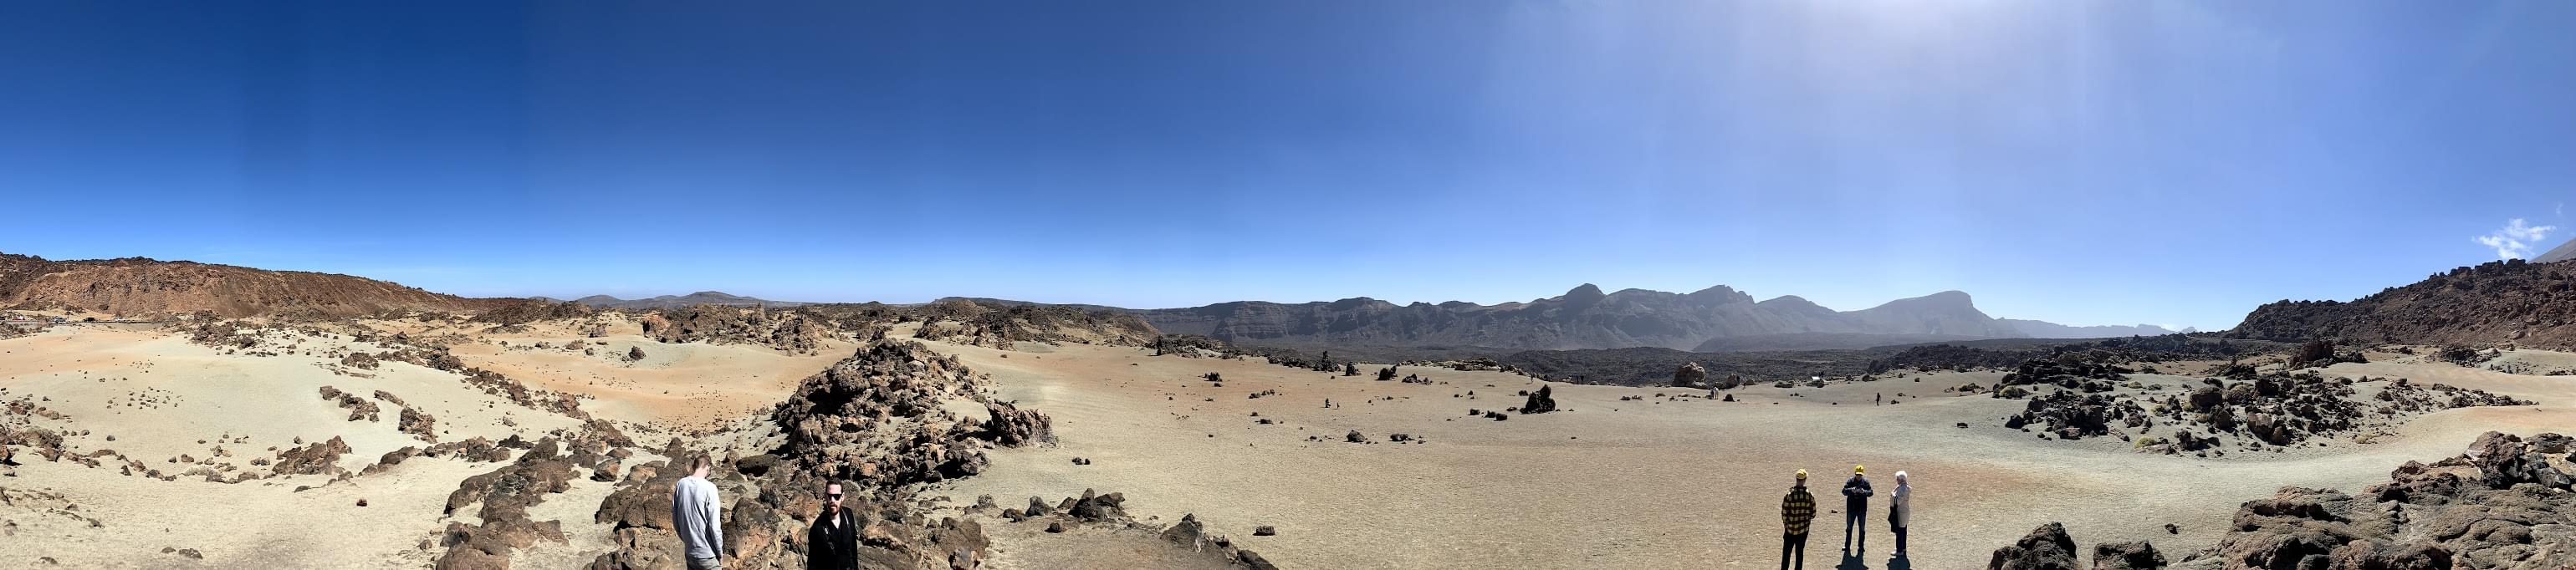 Teide: Der Vulkan von Teneriffa